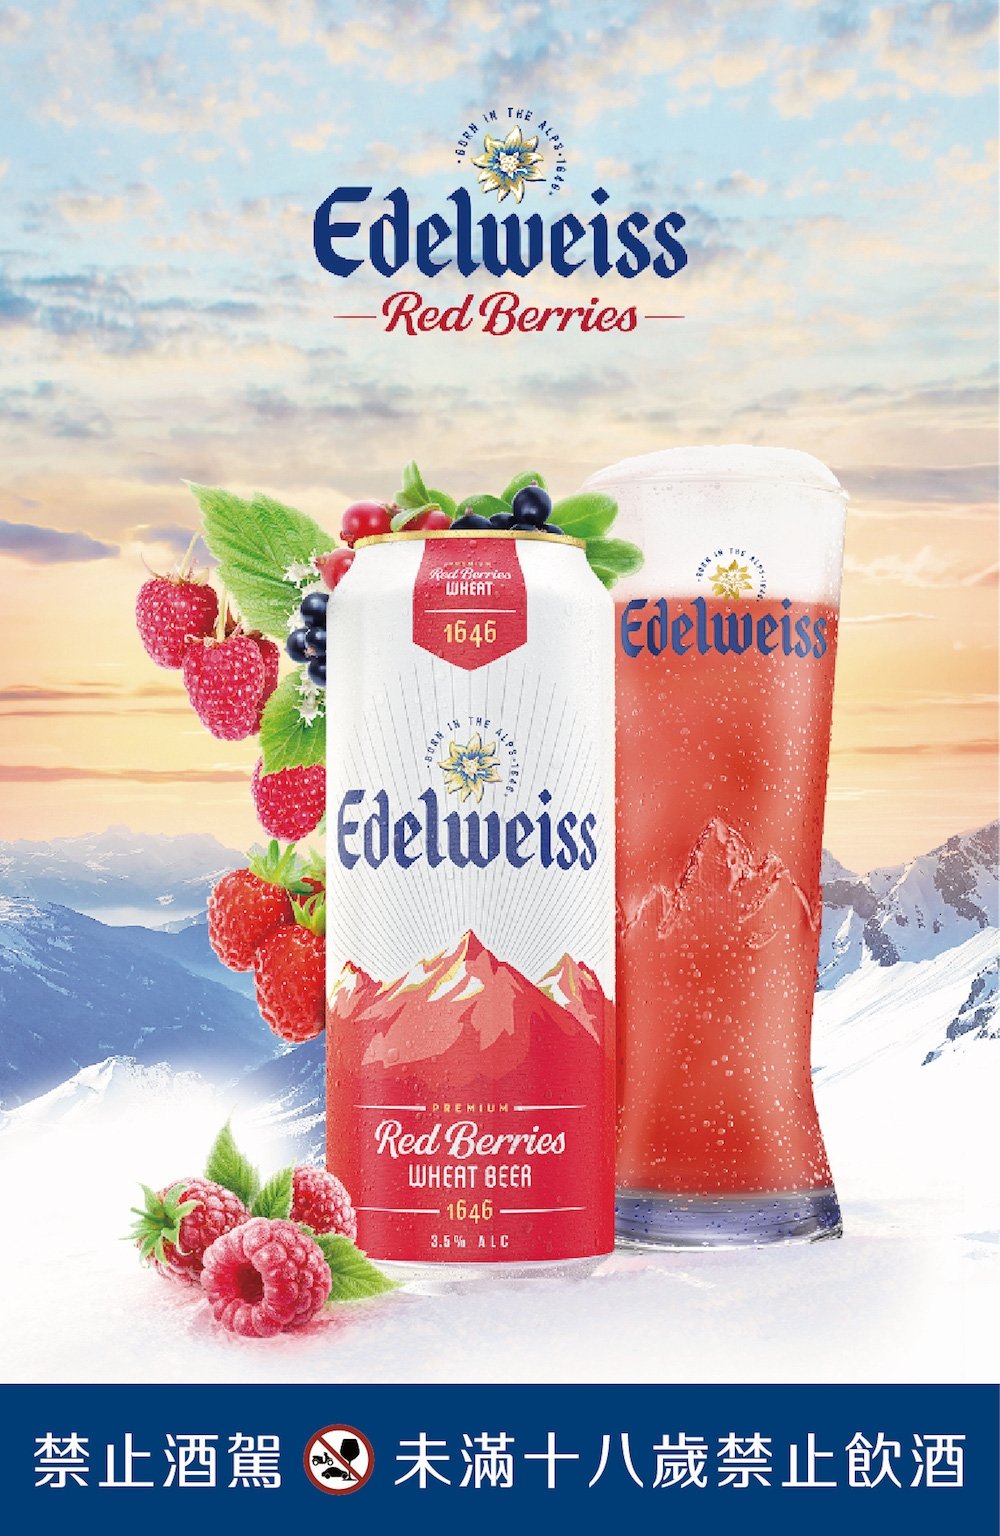 超商啤酒推薦 9. Edelweiss 艾德懷斯 「繽紛莓果」